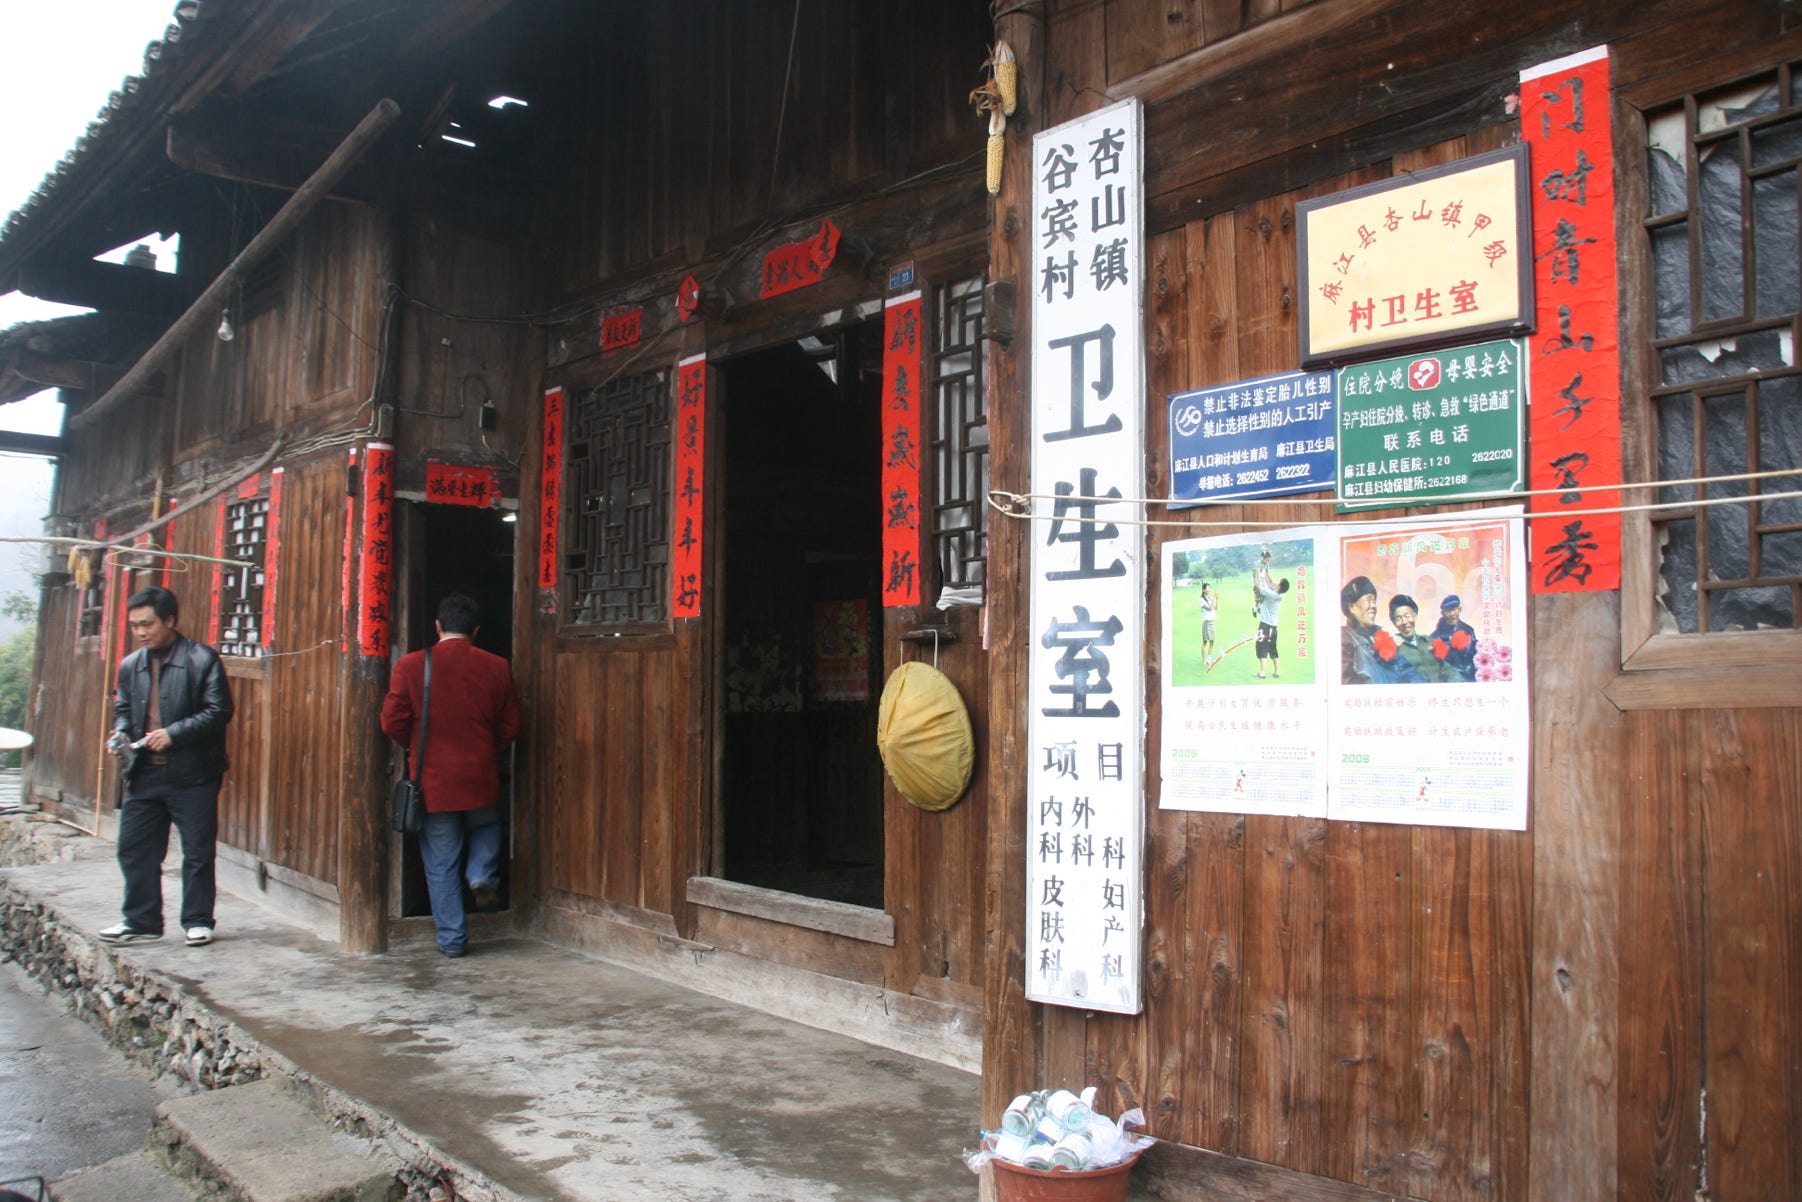 Medical clinic, Gubin village, Majiang County, Guizhou province, China